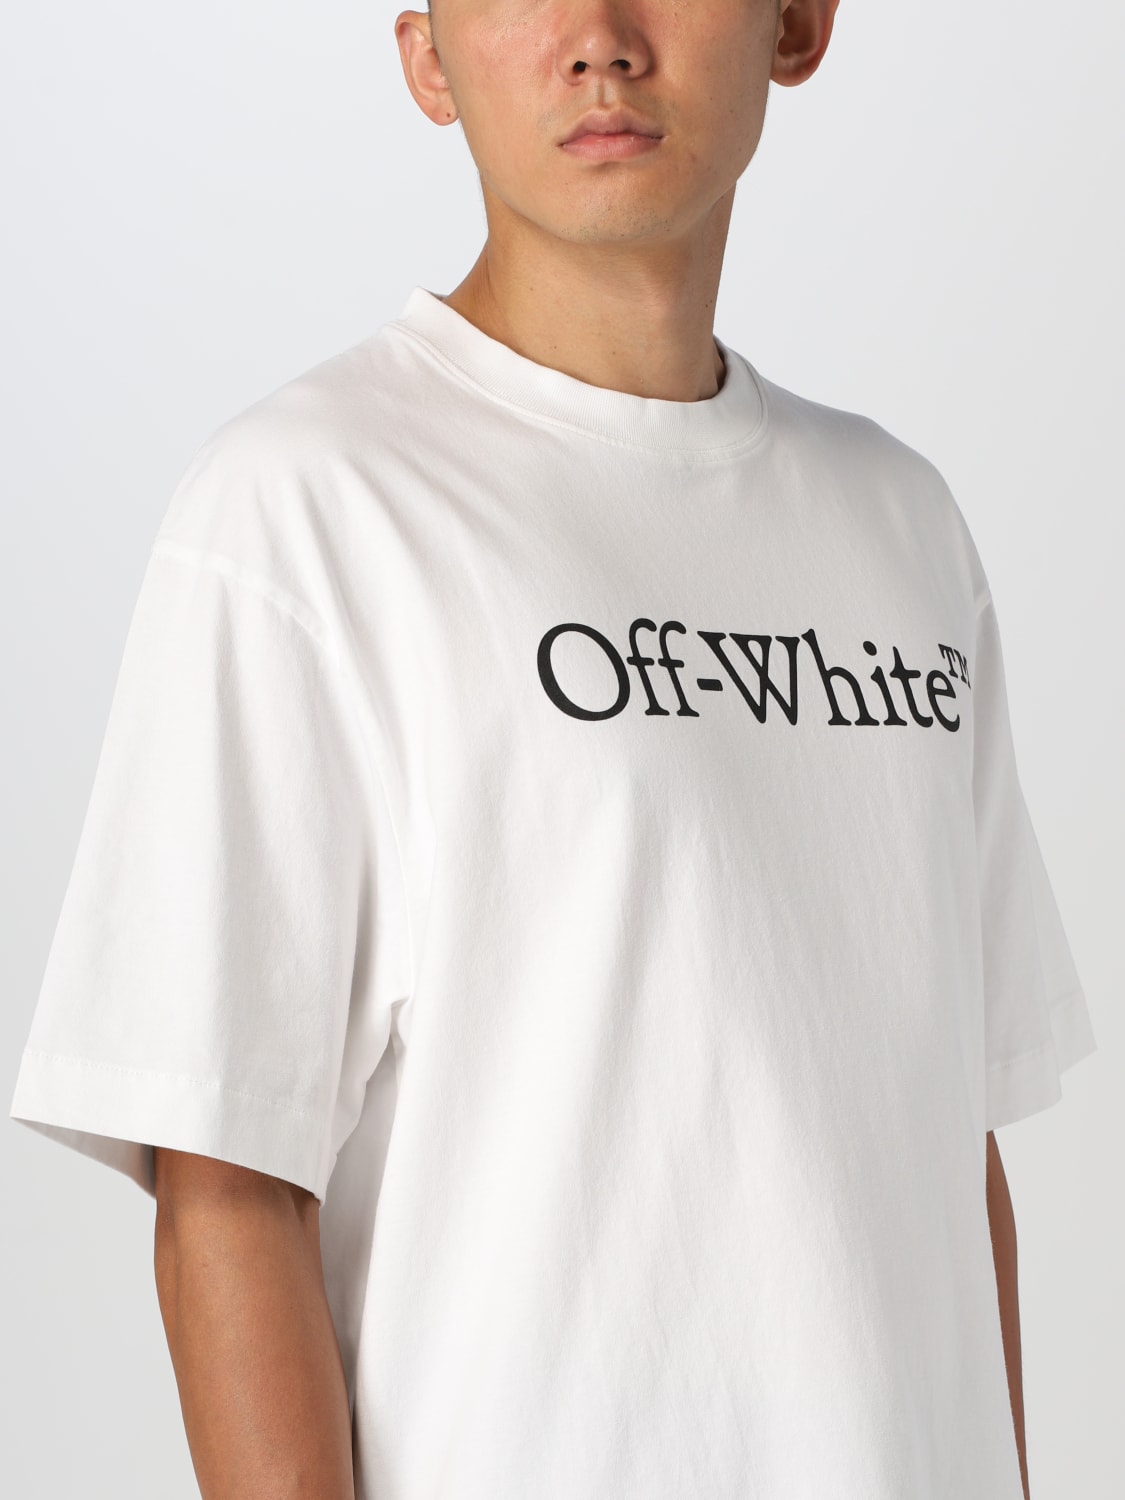 オフホワイト Tシャツ